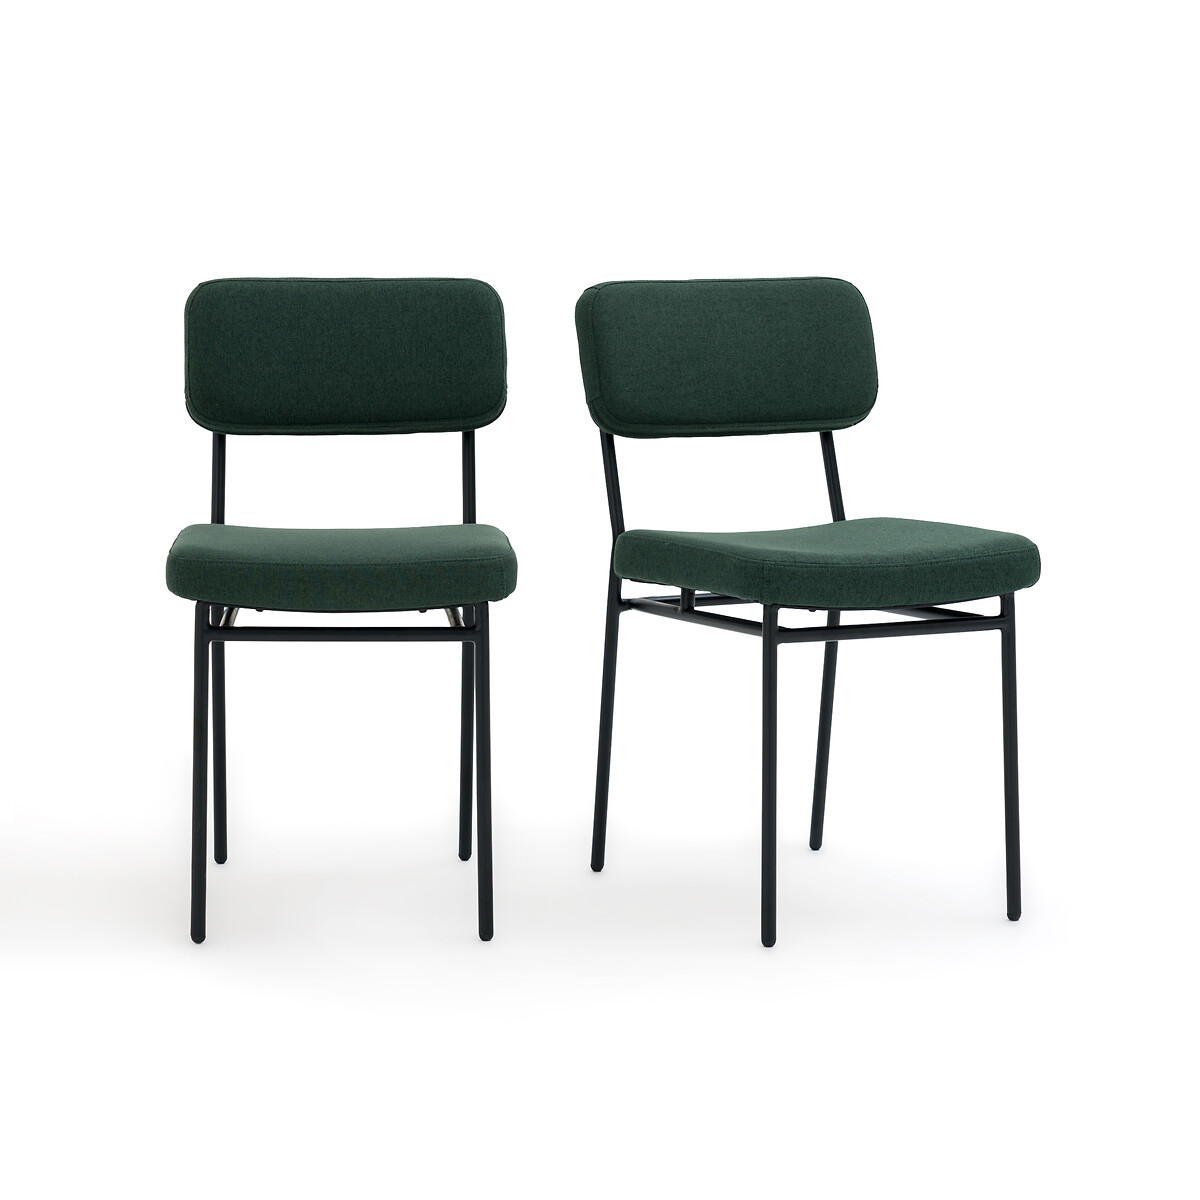 Комплект из 2-х стульев мягких Joao единый размер зеленый